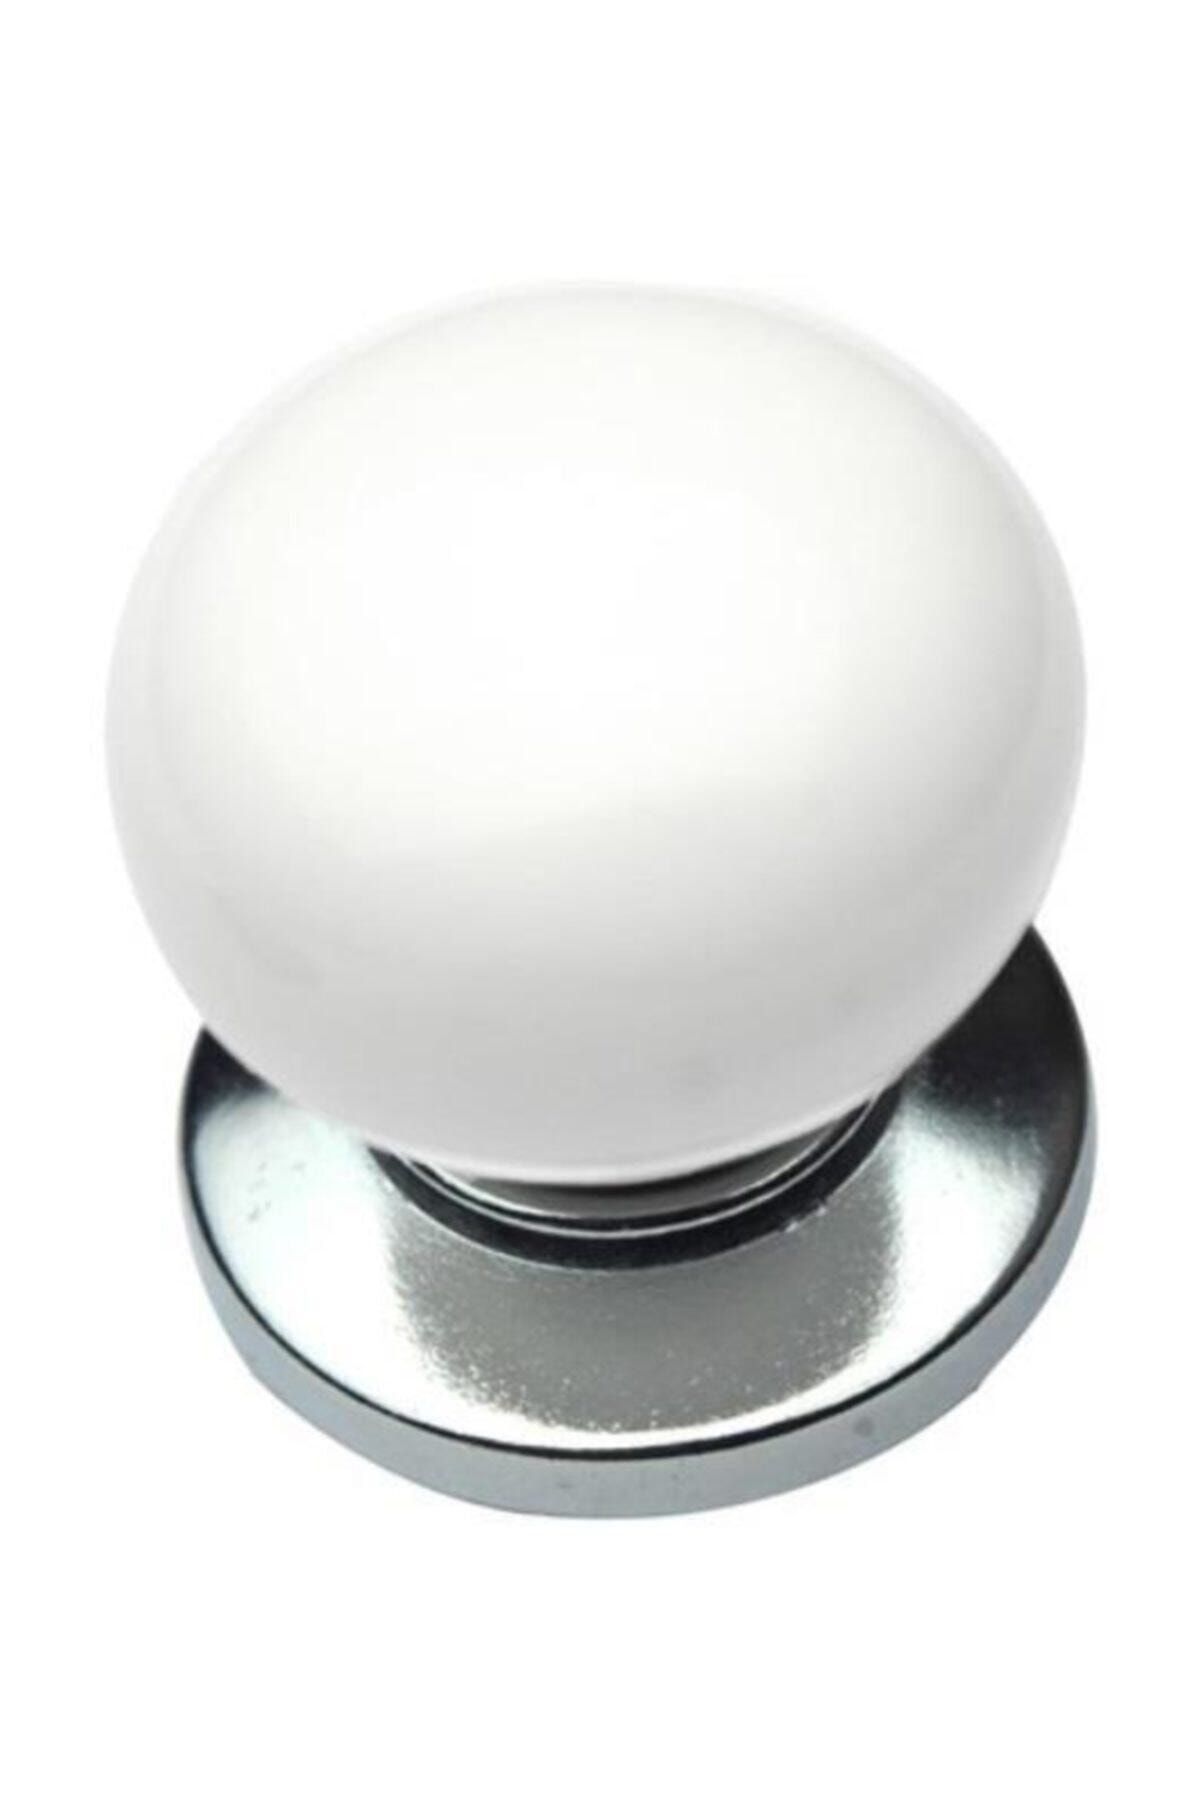 Arwino 3 Adet Gerçek Porselen Kulp Beyaz Parlak Krom Tek Vidalı Çekmece Dolap Mobilya Kulpu